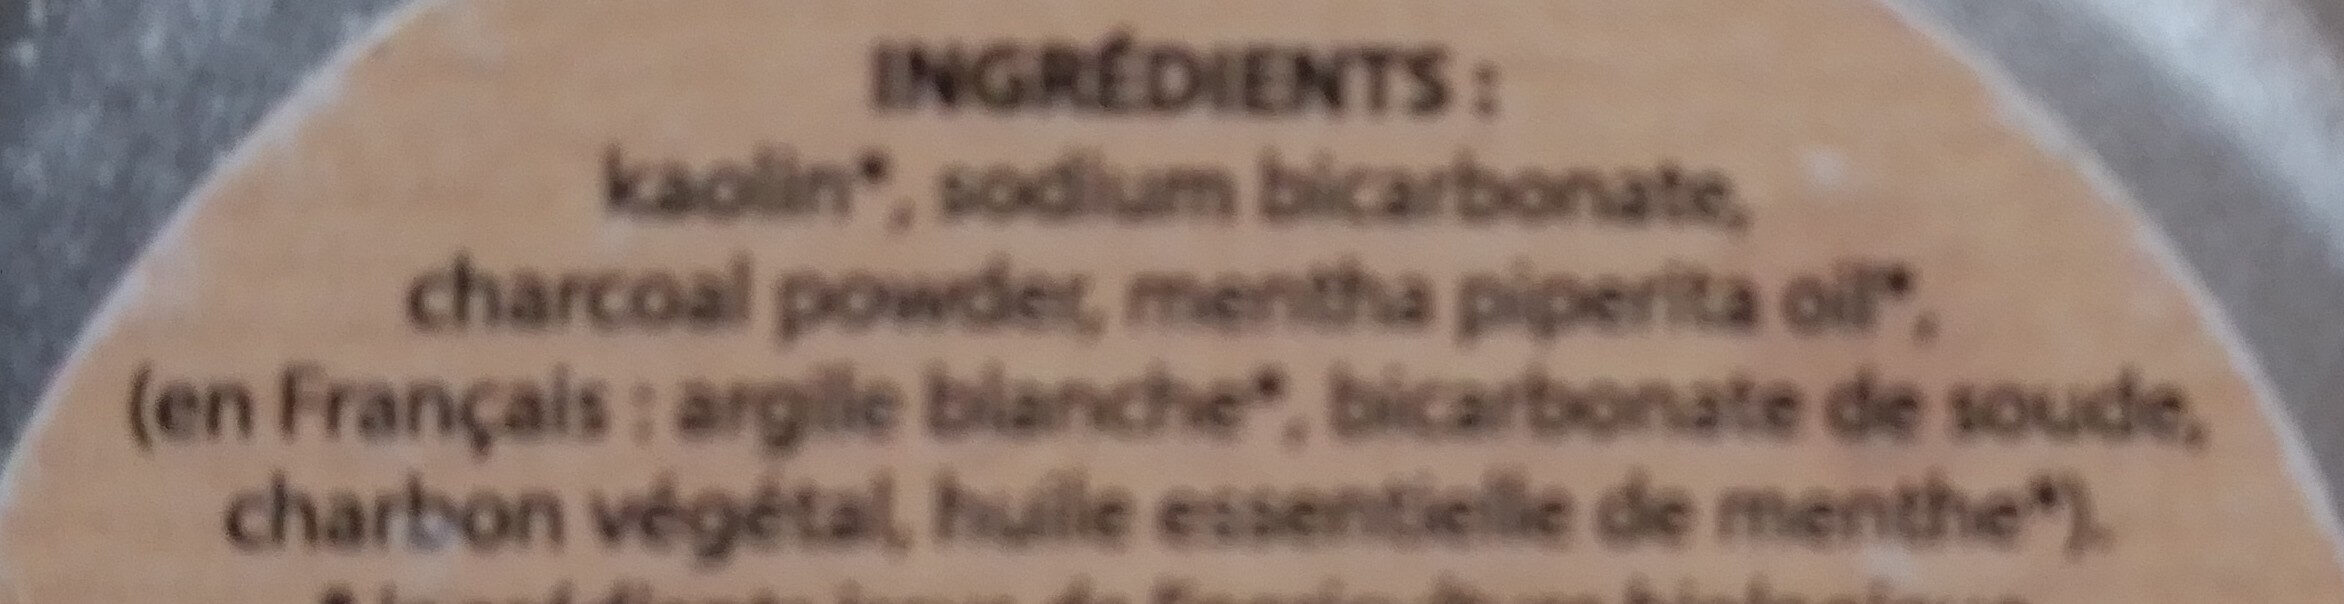 dentifrice en poudre au charbon végétal et à la menthe - Ingredients - fr